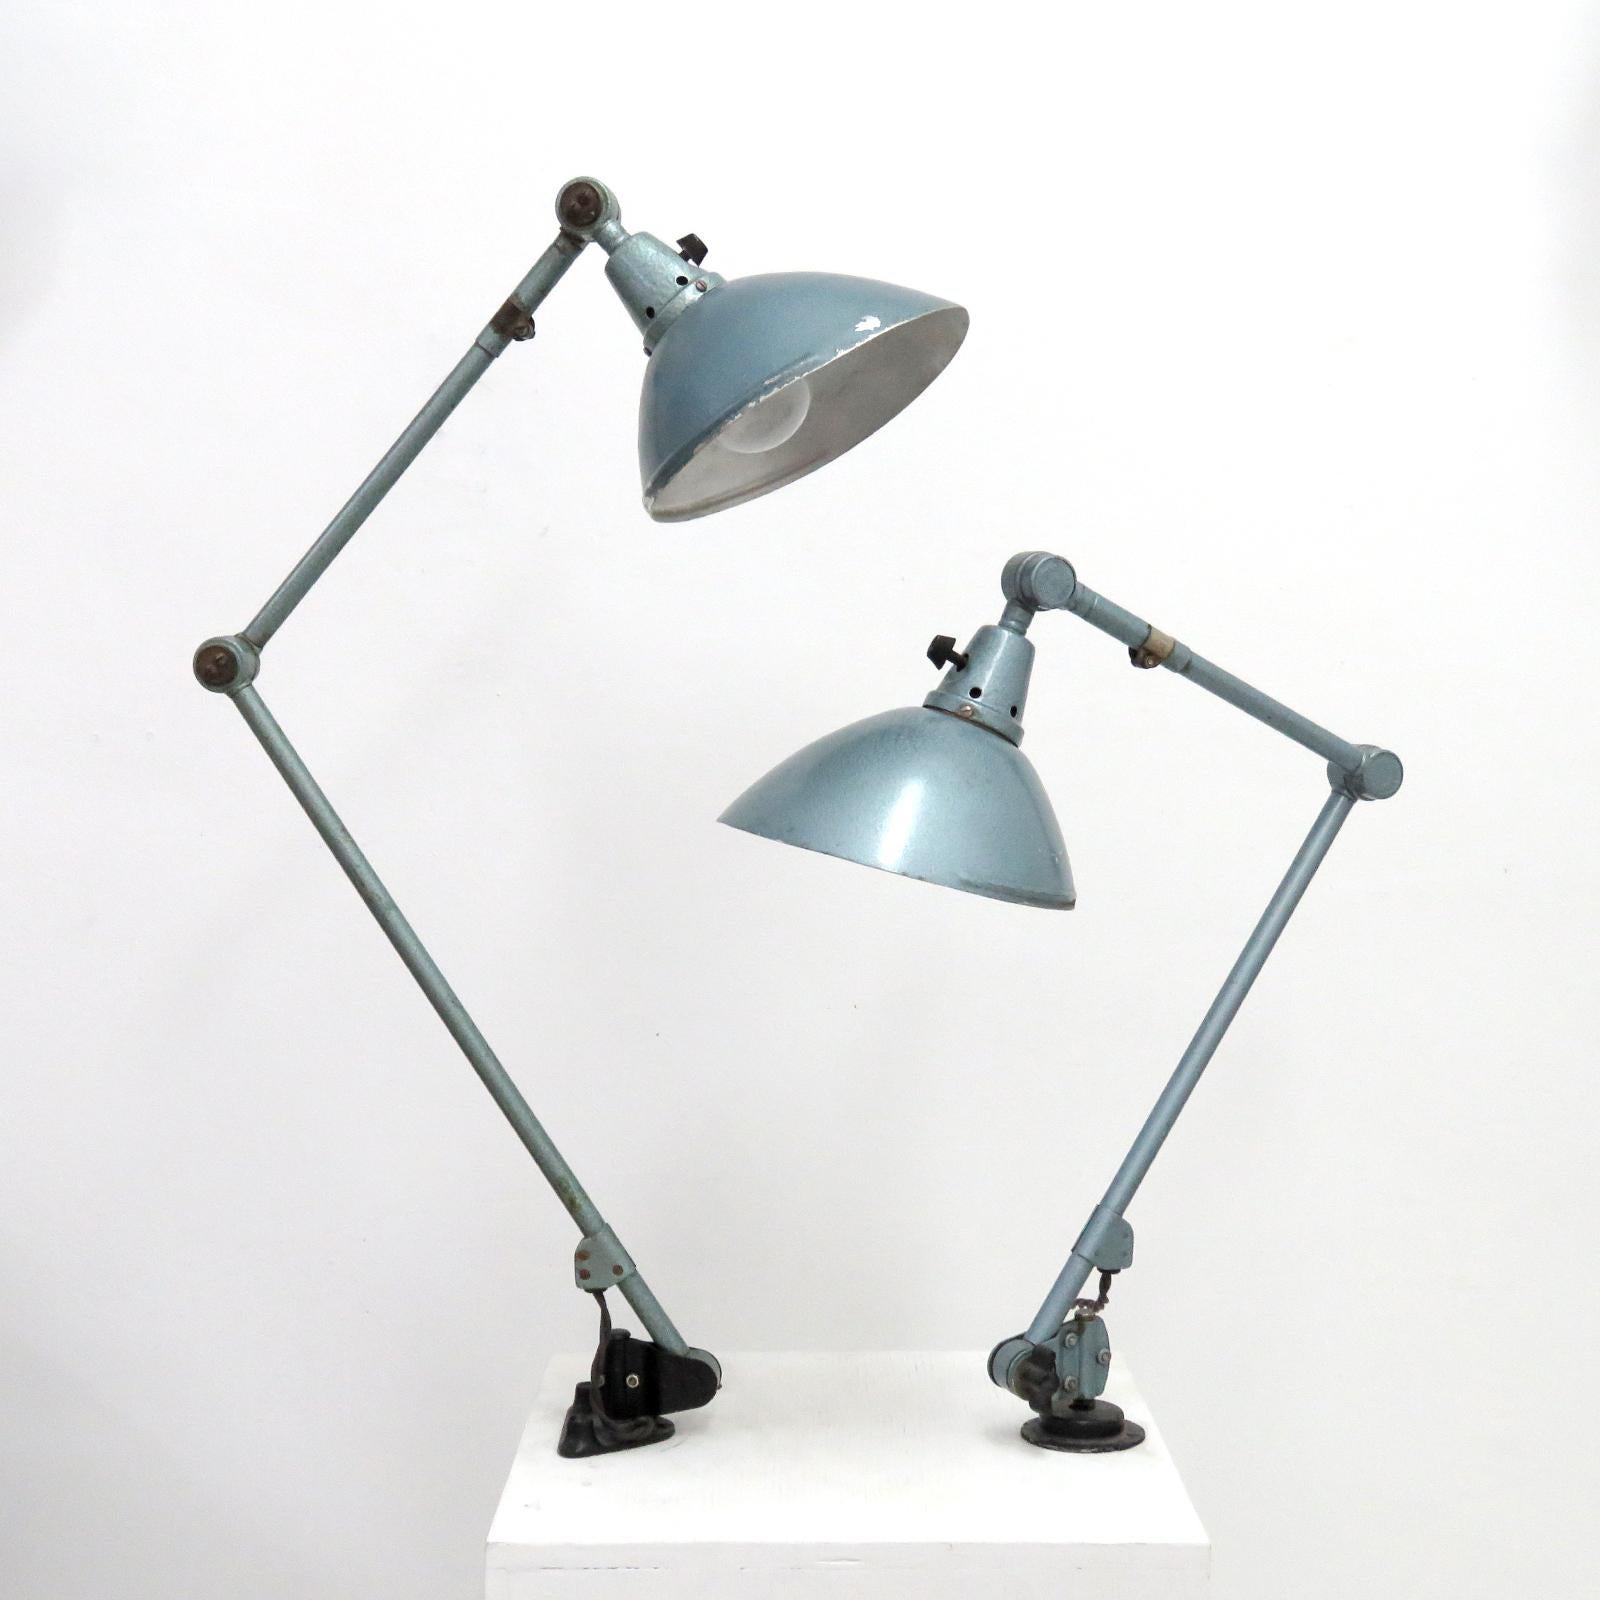 Wunderschöne Tischlampen von Curt Fischer für Midgard aus den 1920er Jahren in originaler grau-grüner Hammerschlaglackierung und Ein-/Aus-Drehschalter am Schirm, Armlängen der kleineren Lampe 18